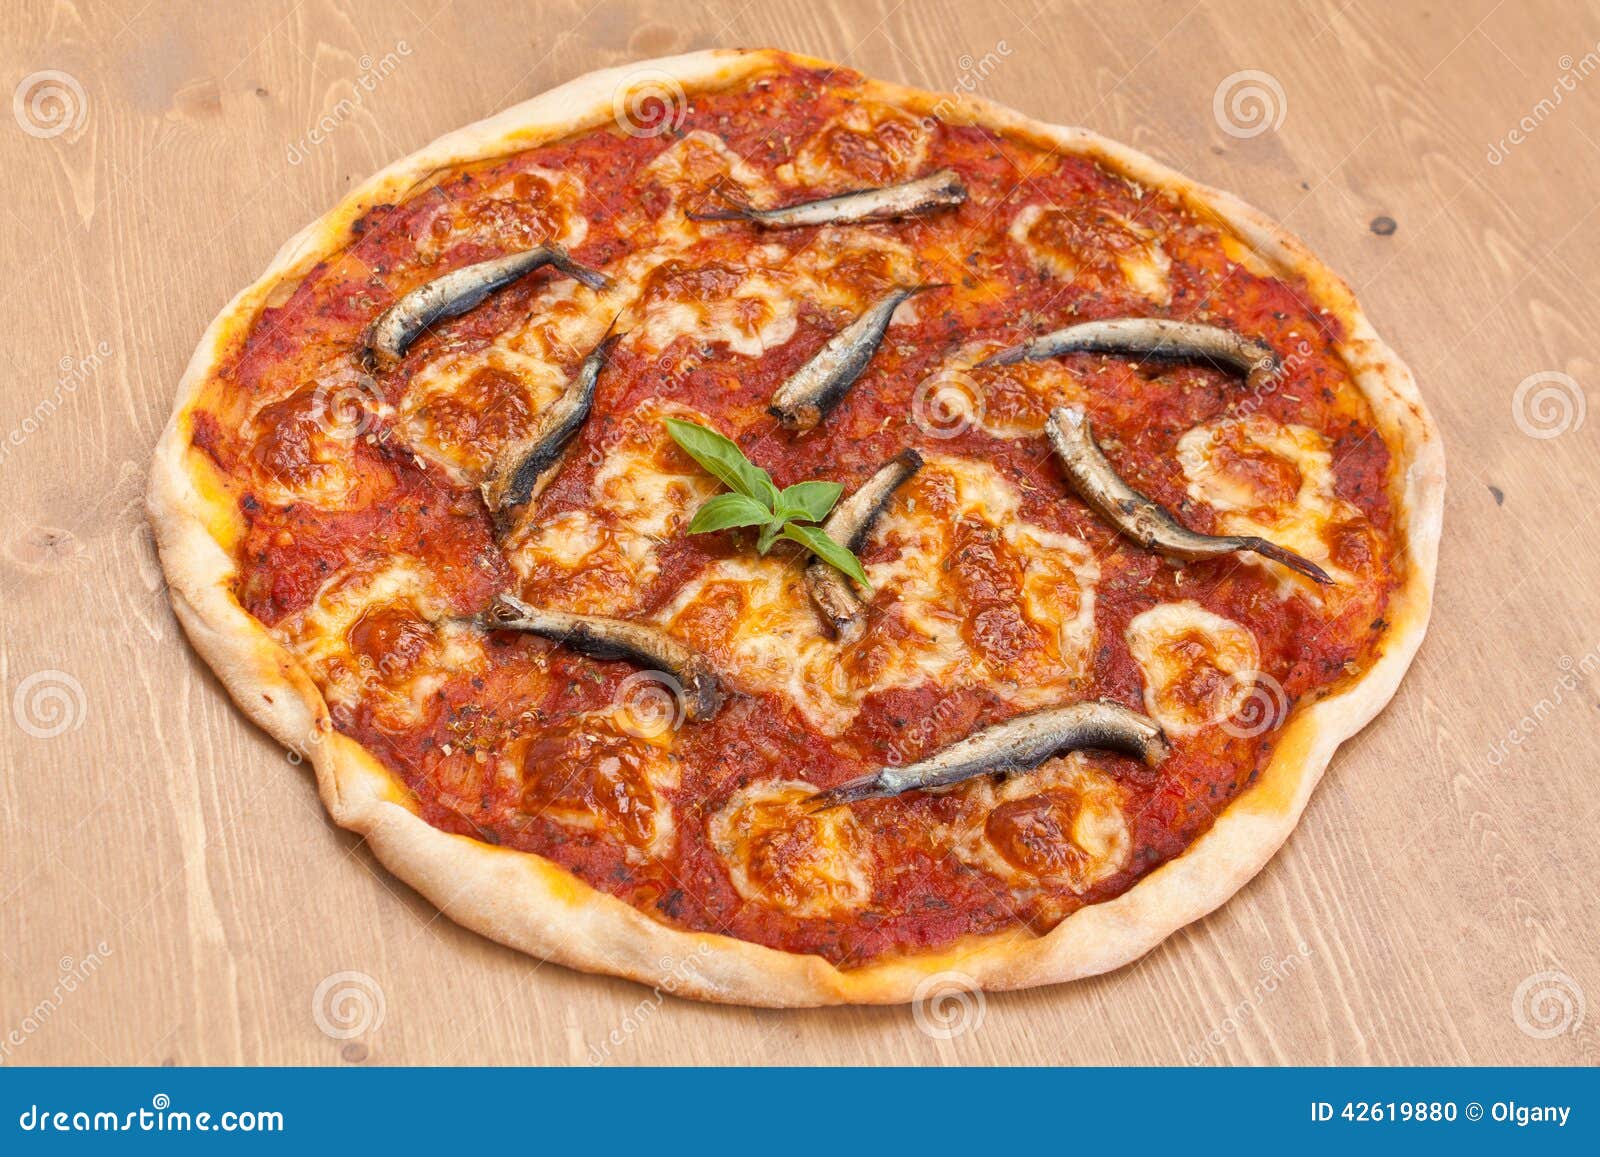 что такое пицца маринара рецепт фото 97